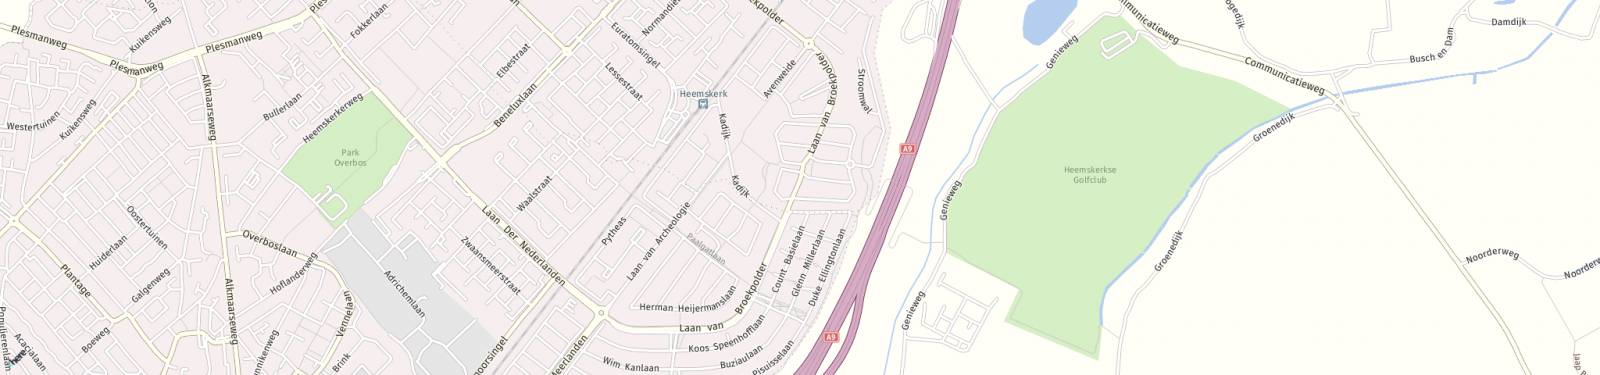 Kaart met locatie Appartement Laan van Broekpolder